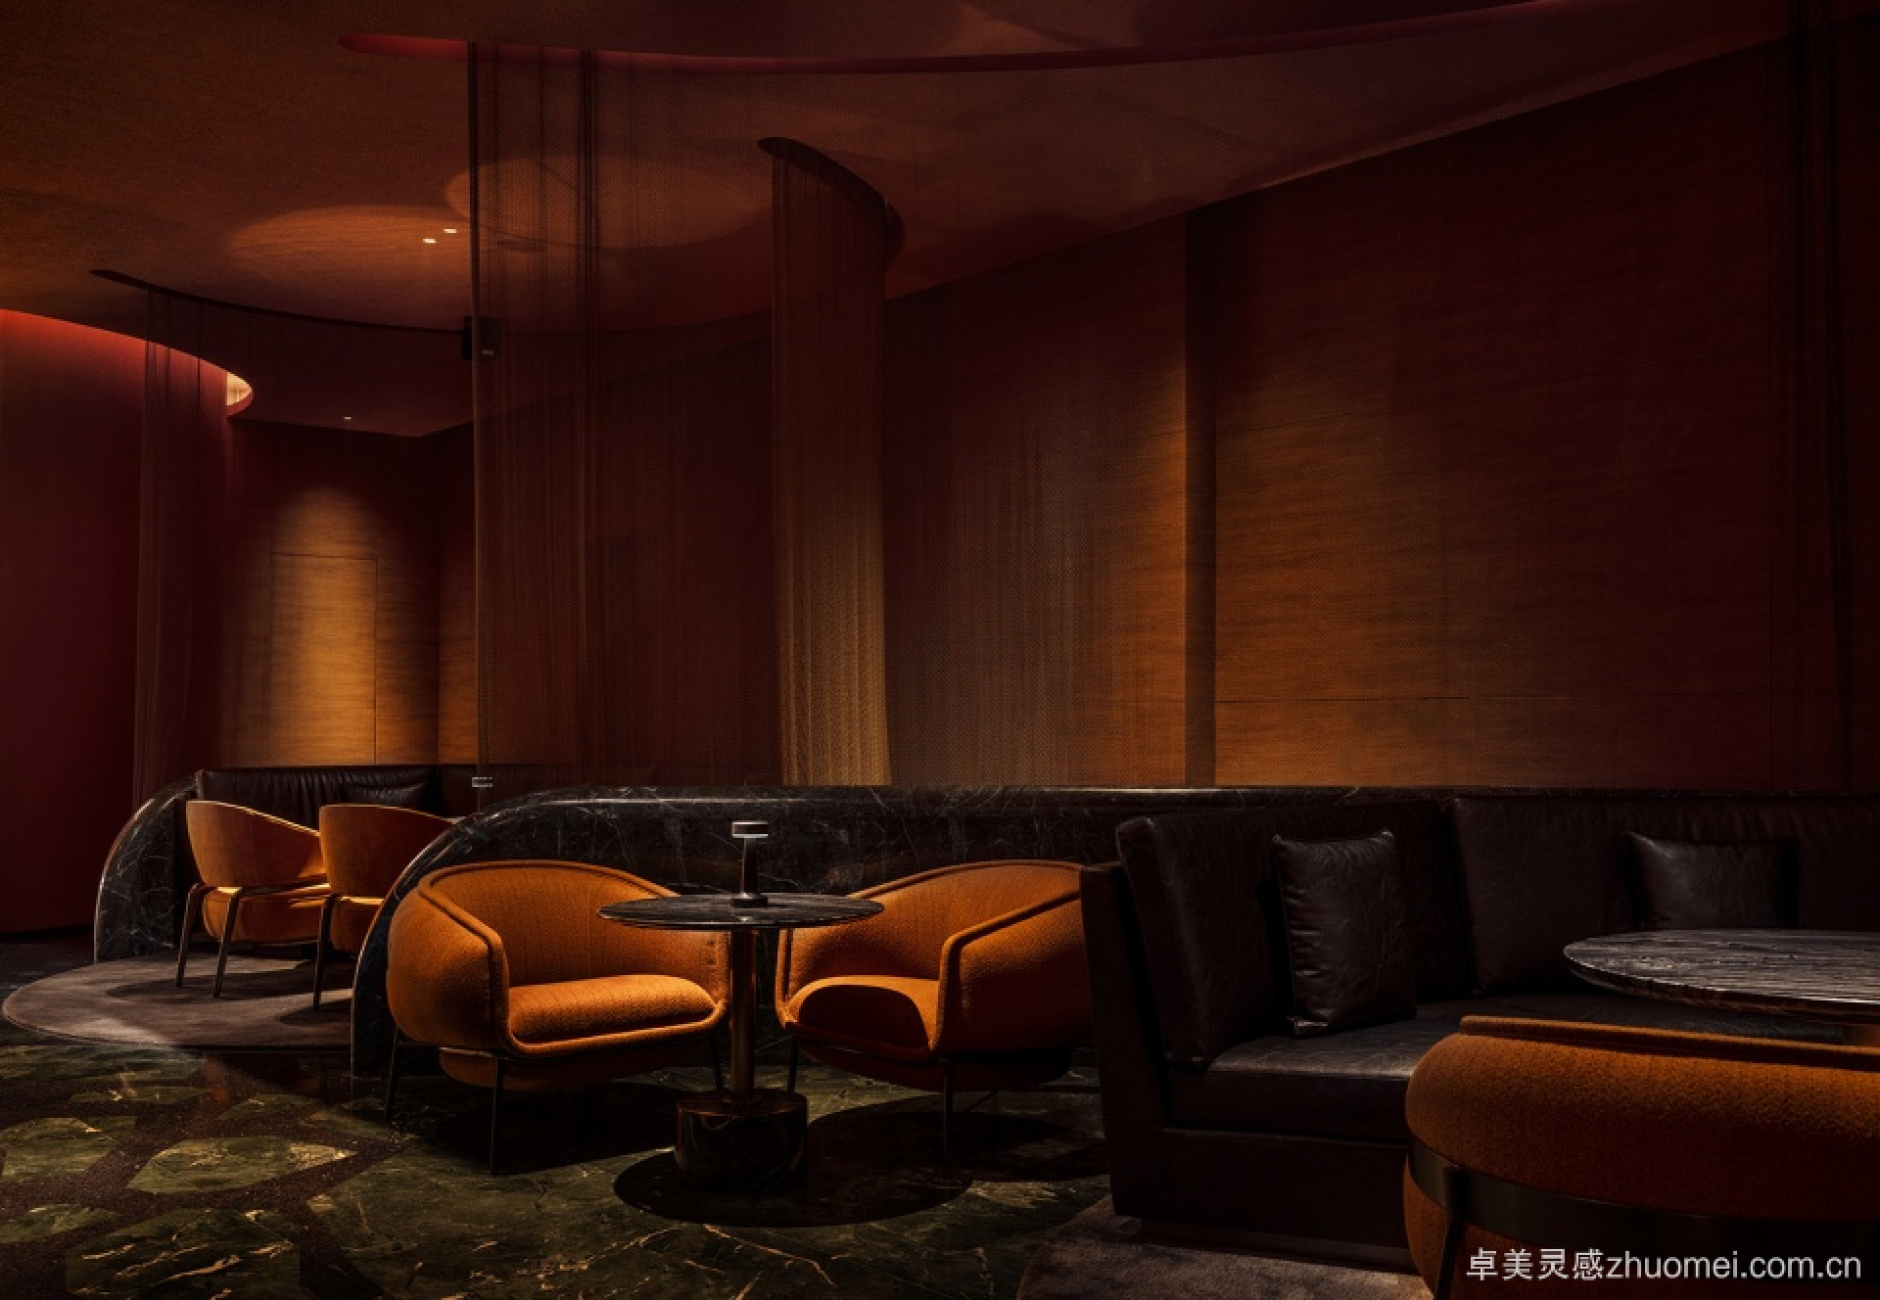 苏州 W 酒店 SOL37 酒廊 | 独特的空间设计与艺术品的完美融合-164